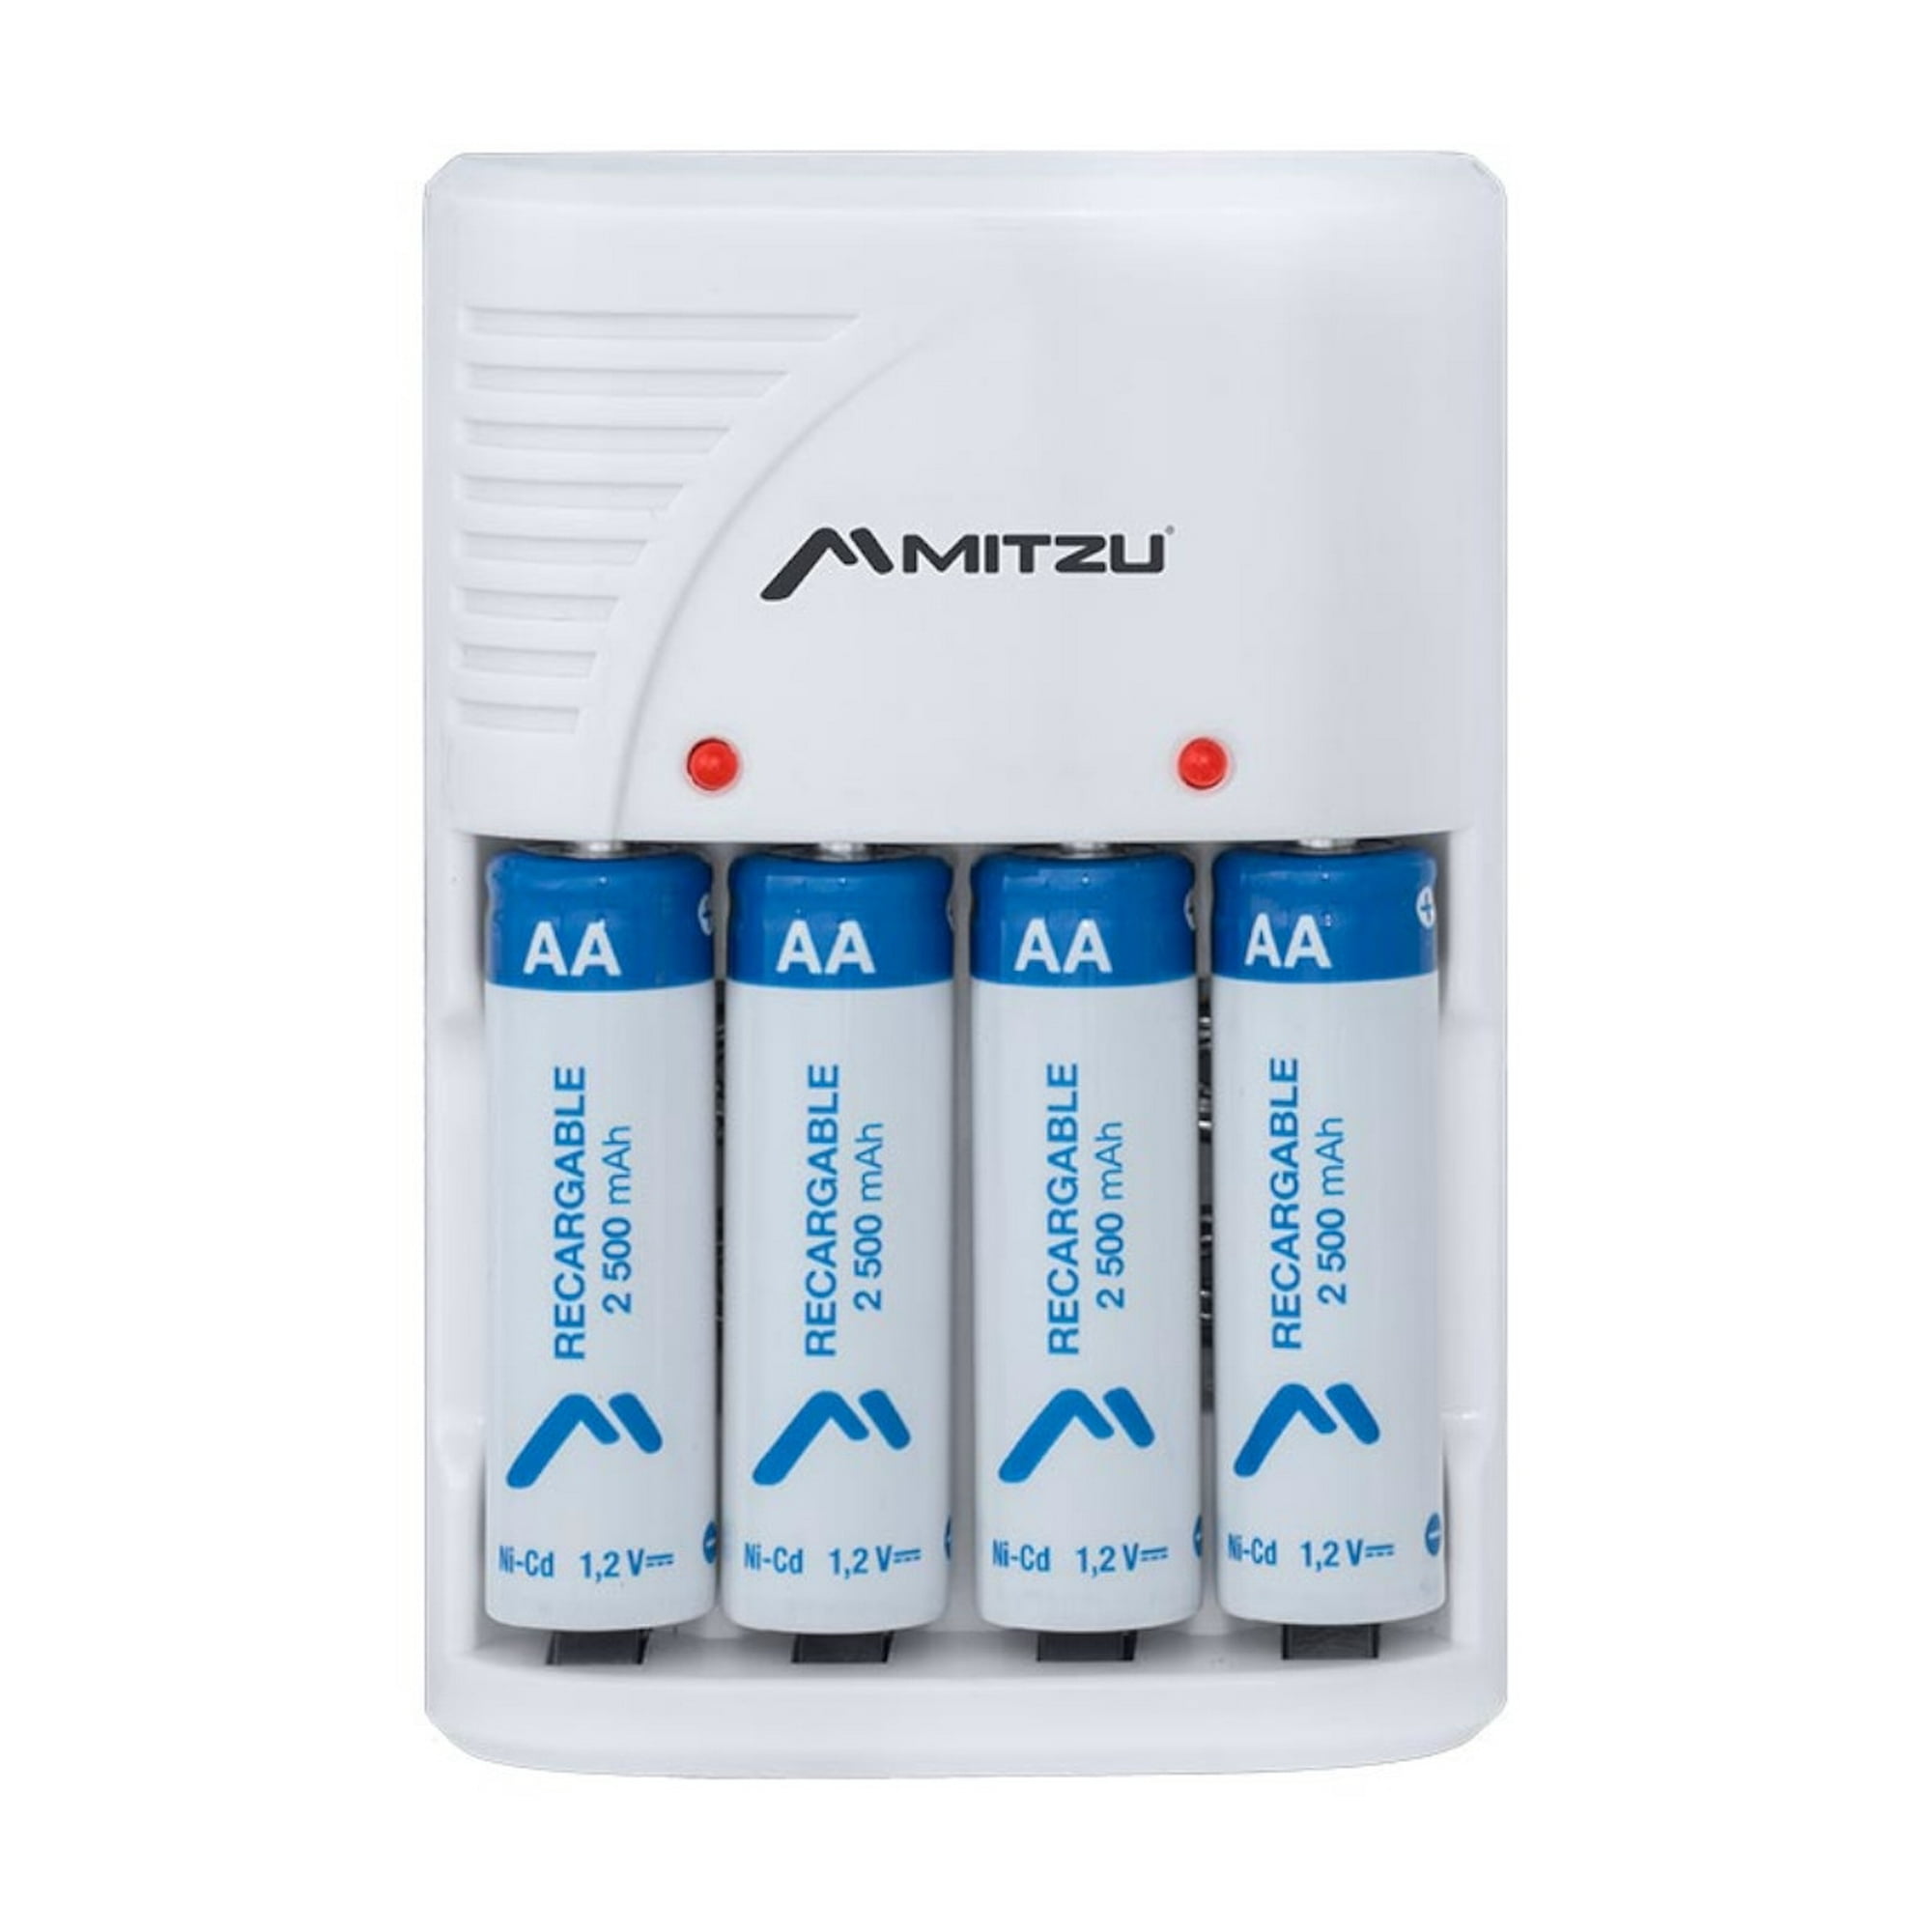 Cargador de batería inteligente AA / AAA LED de 4 bahías + 4 pilas AA 2700  mAh NiMH